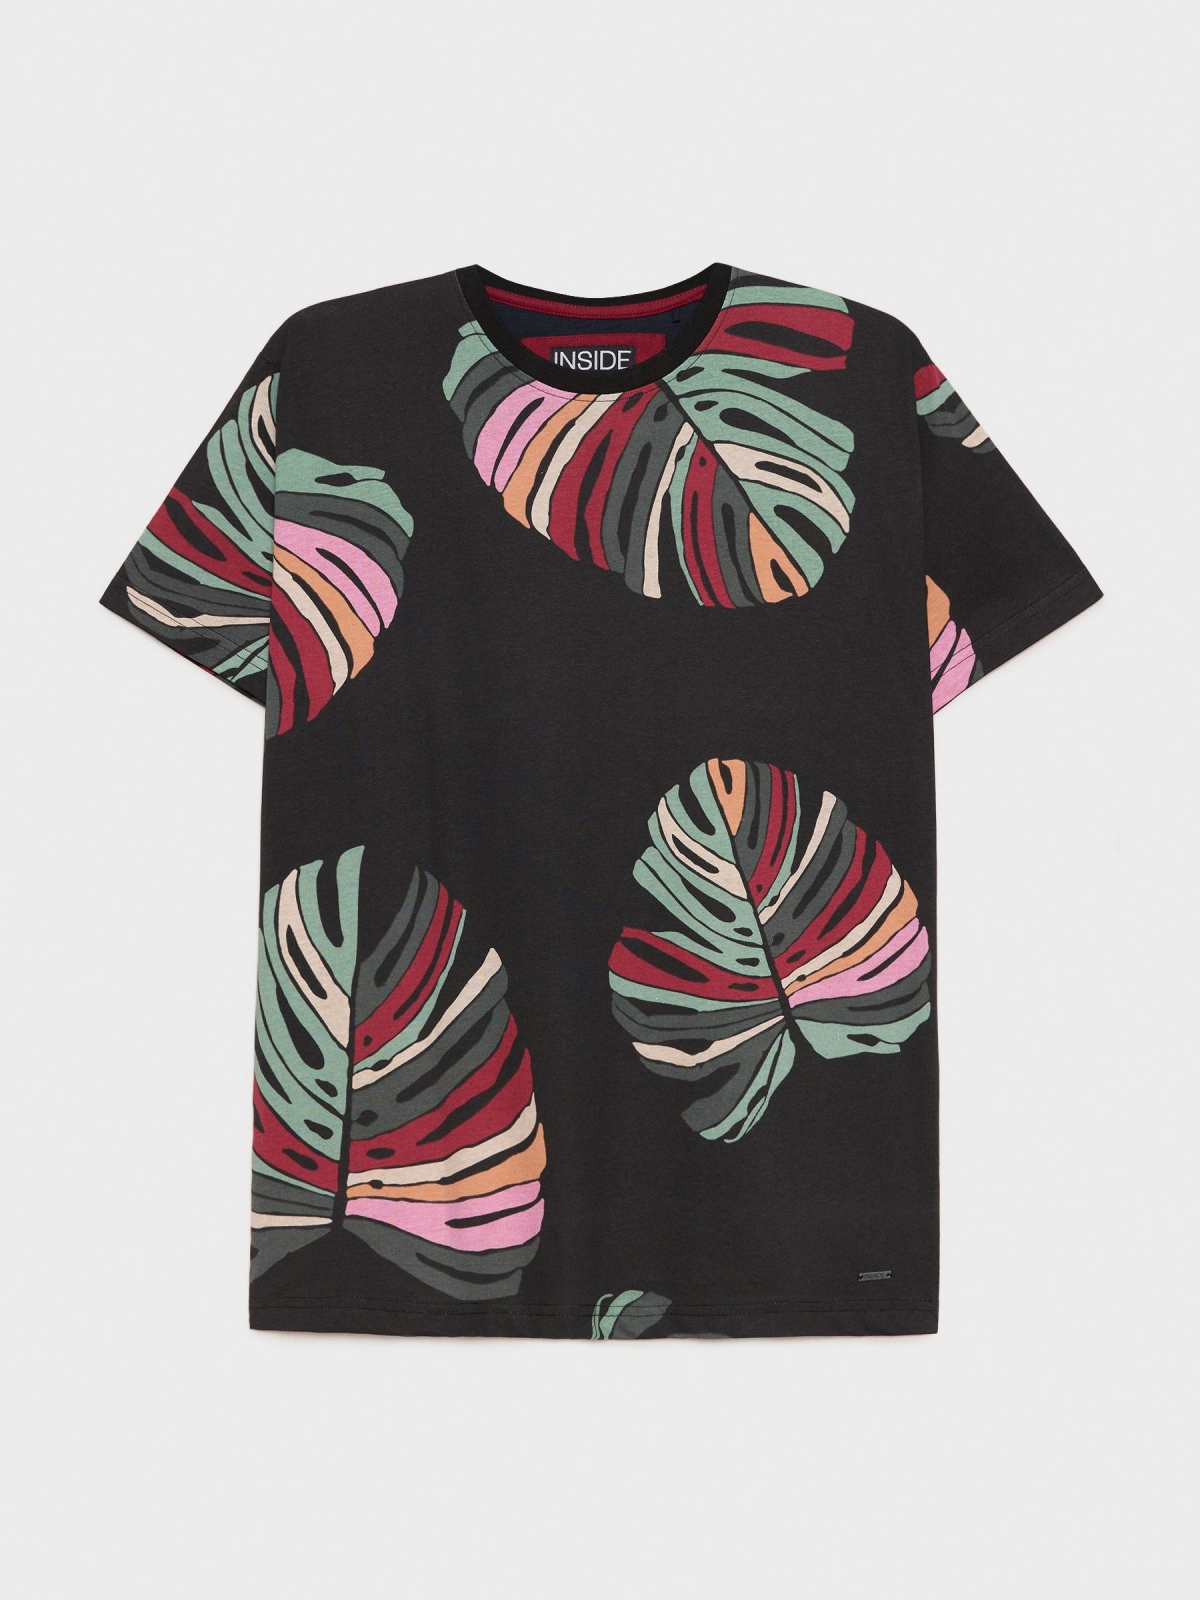  Camiseta print hojas multicolor negro